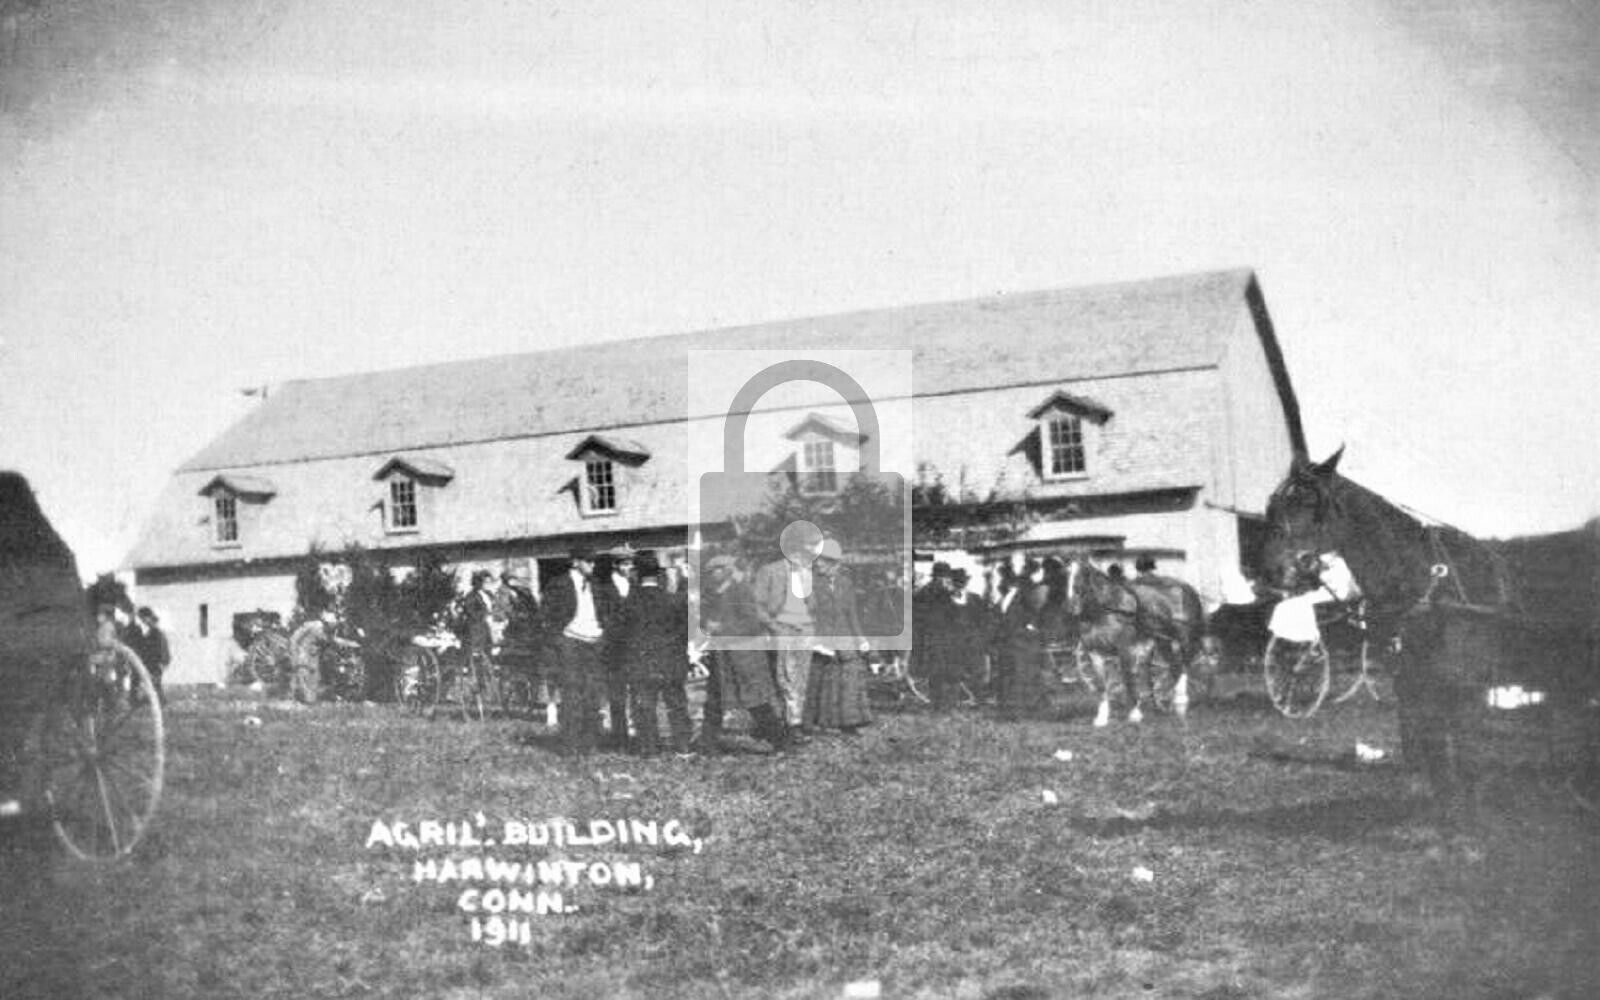 Agril Building Harwinton Connecticut CT Reprint Postcard